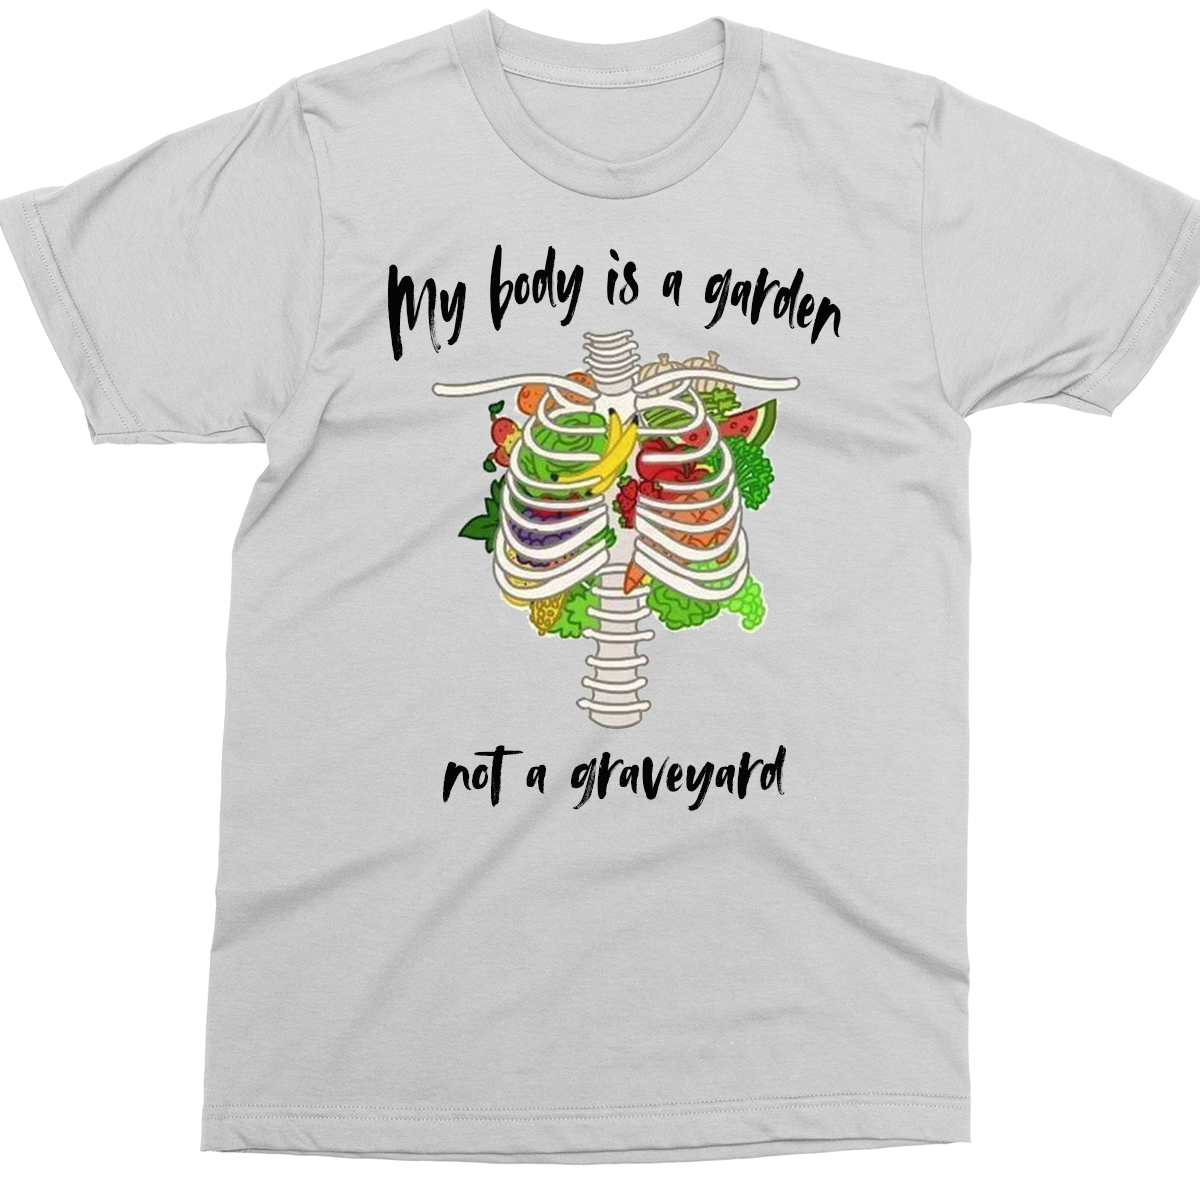 My Body is a Garden not a graveyard white t-shirt